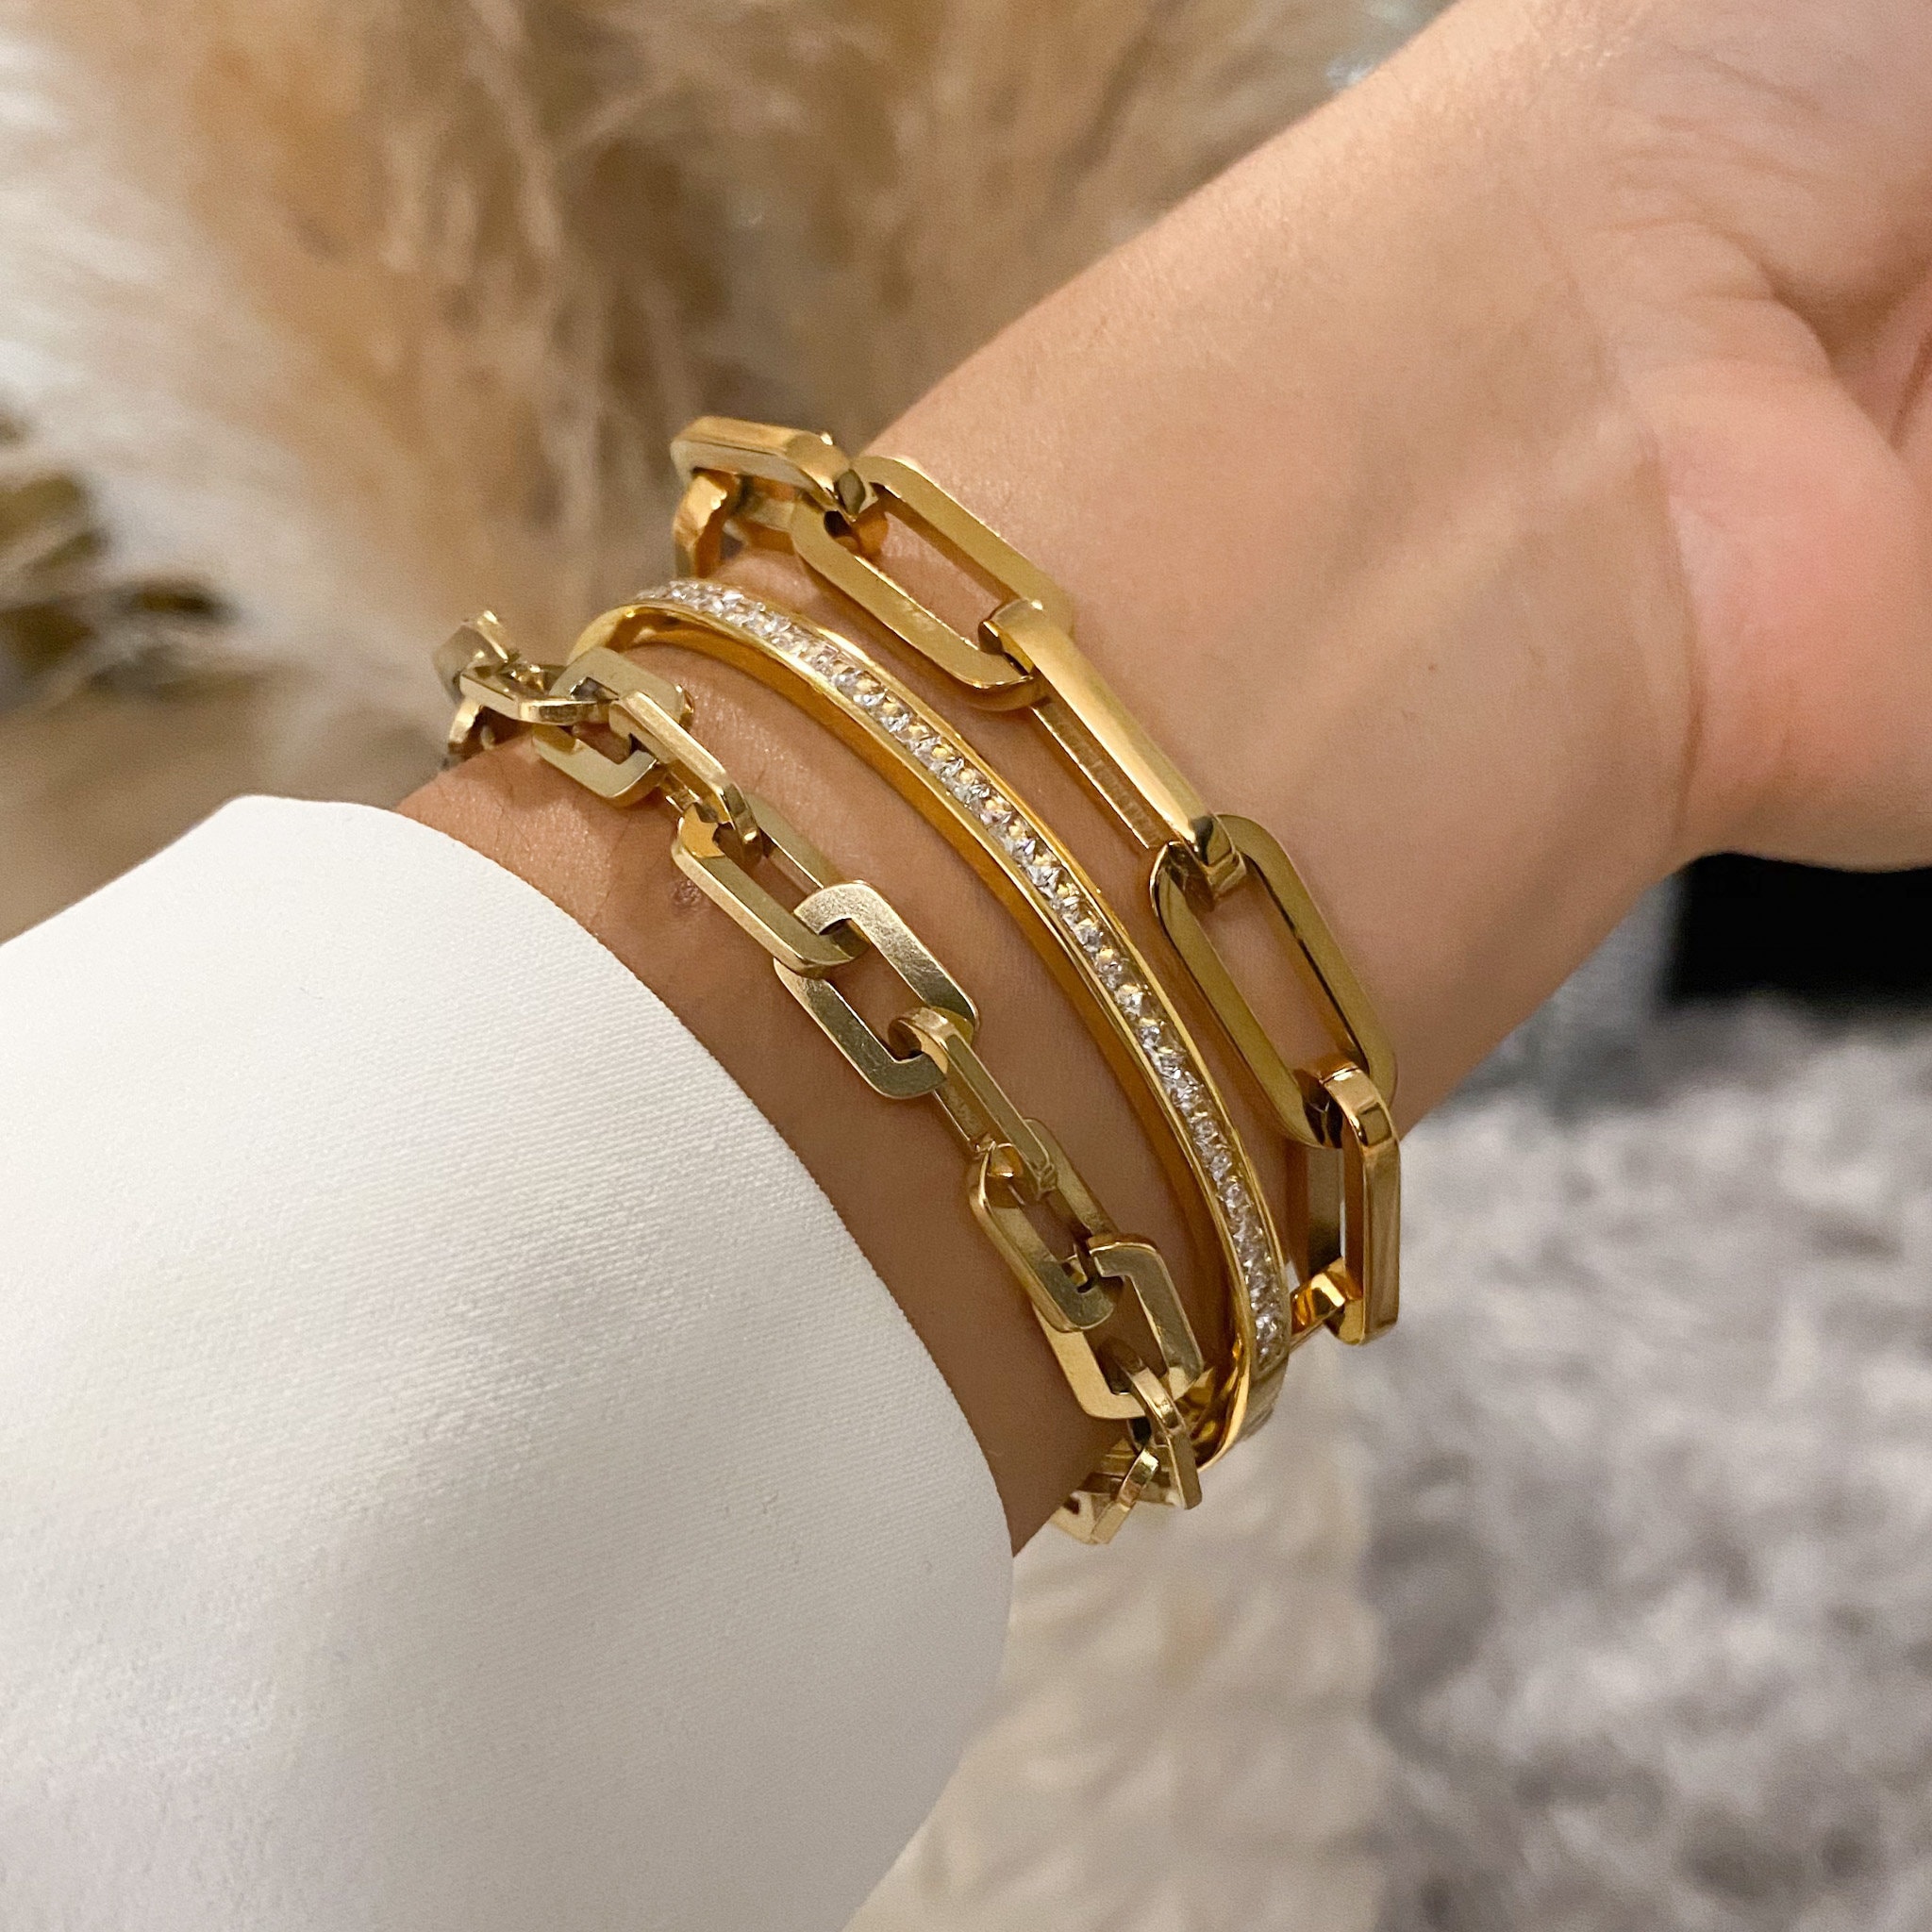 Jess Lock Chain Bracelet in Gold